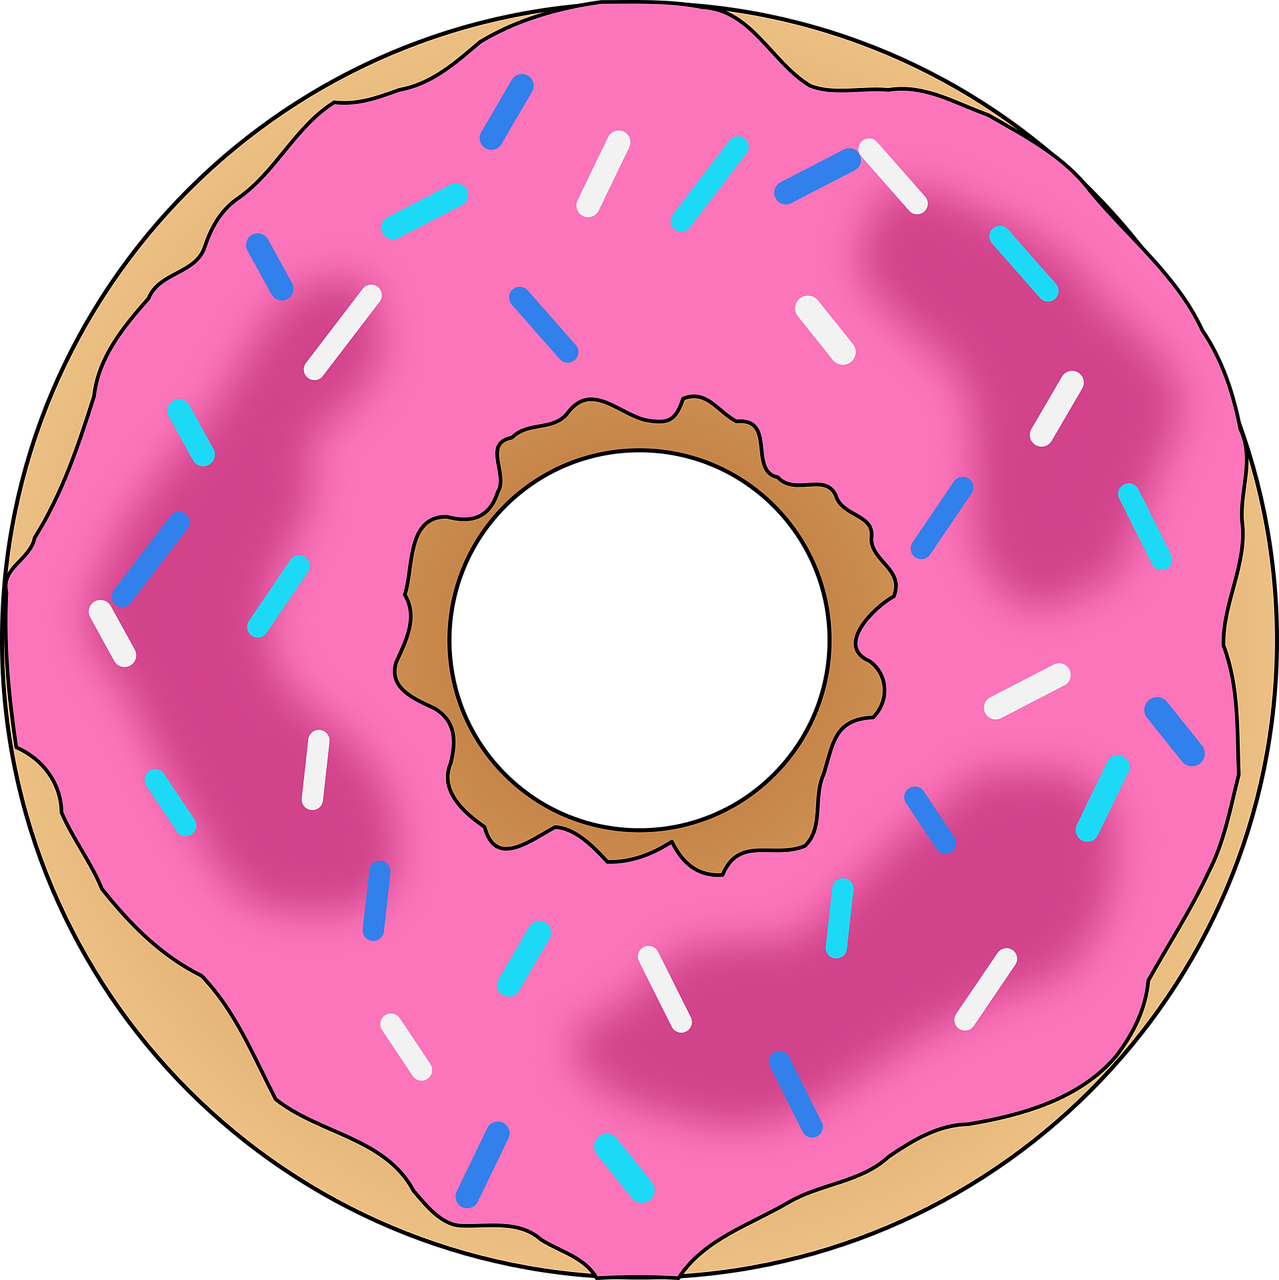 Pink Frosted Sprinkled Doughnut Illustration.png PNG